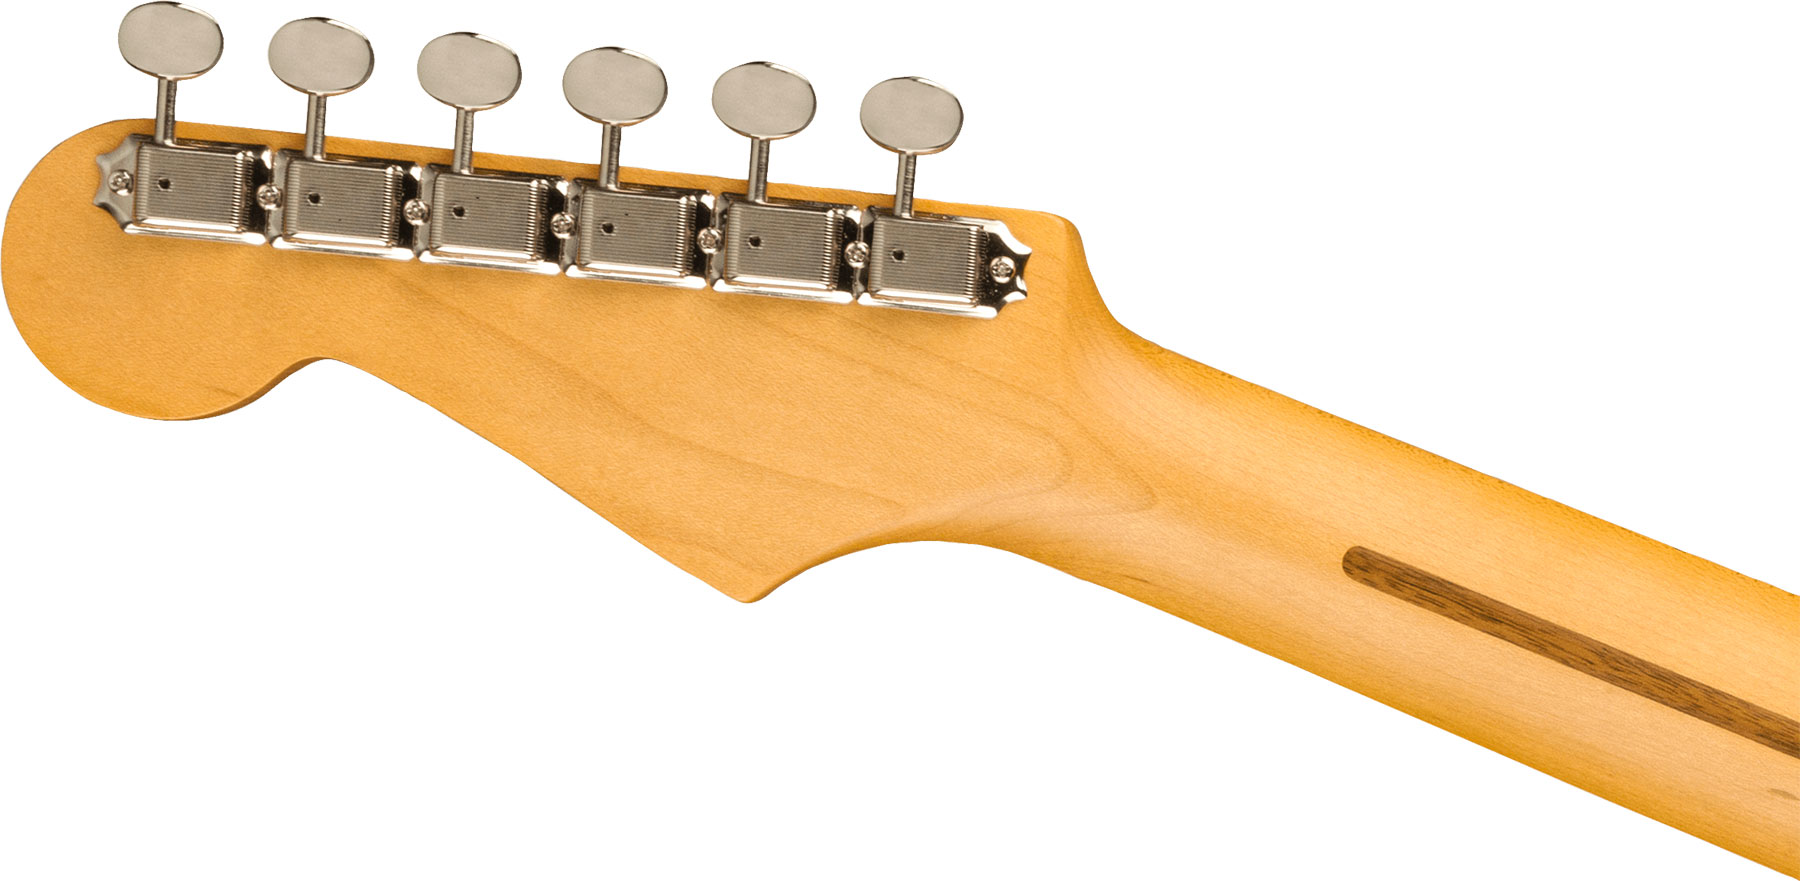 Fender Strat Jv Modified '50s Jap Hss Trem Mn - 2-color Sunburst - E-Gitarre in Str-Form - Variation 3